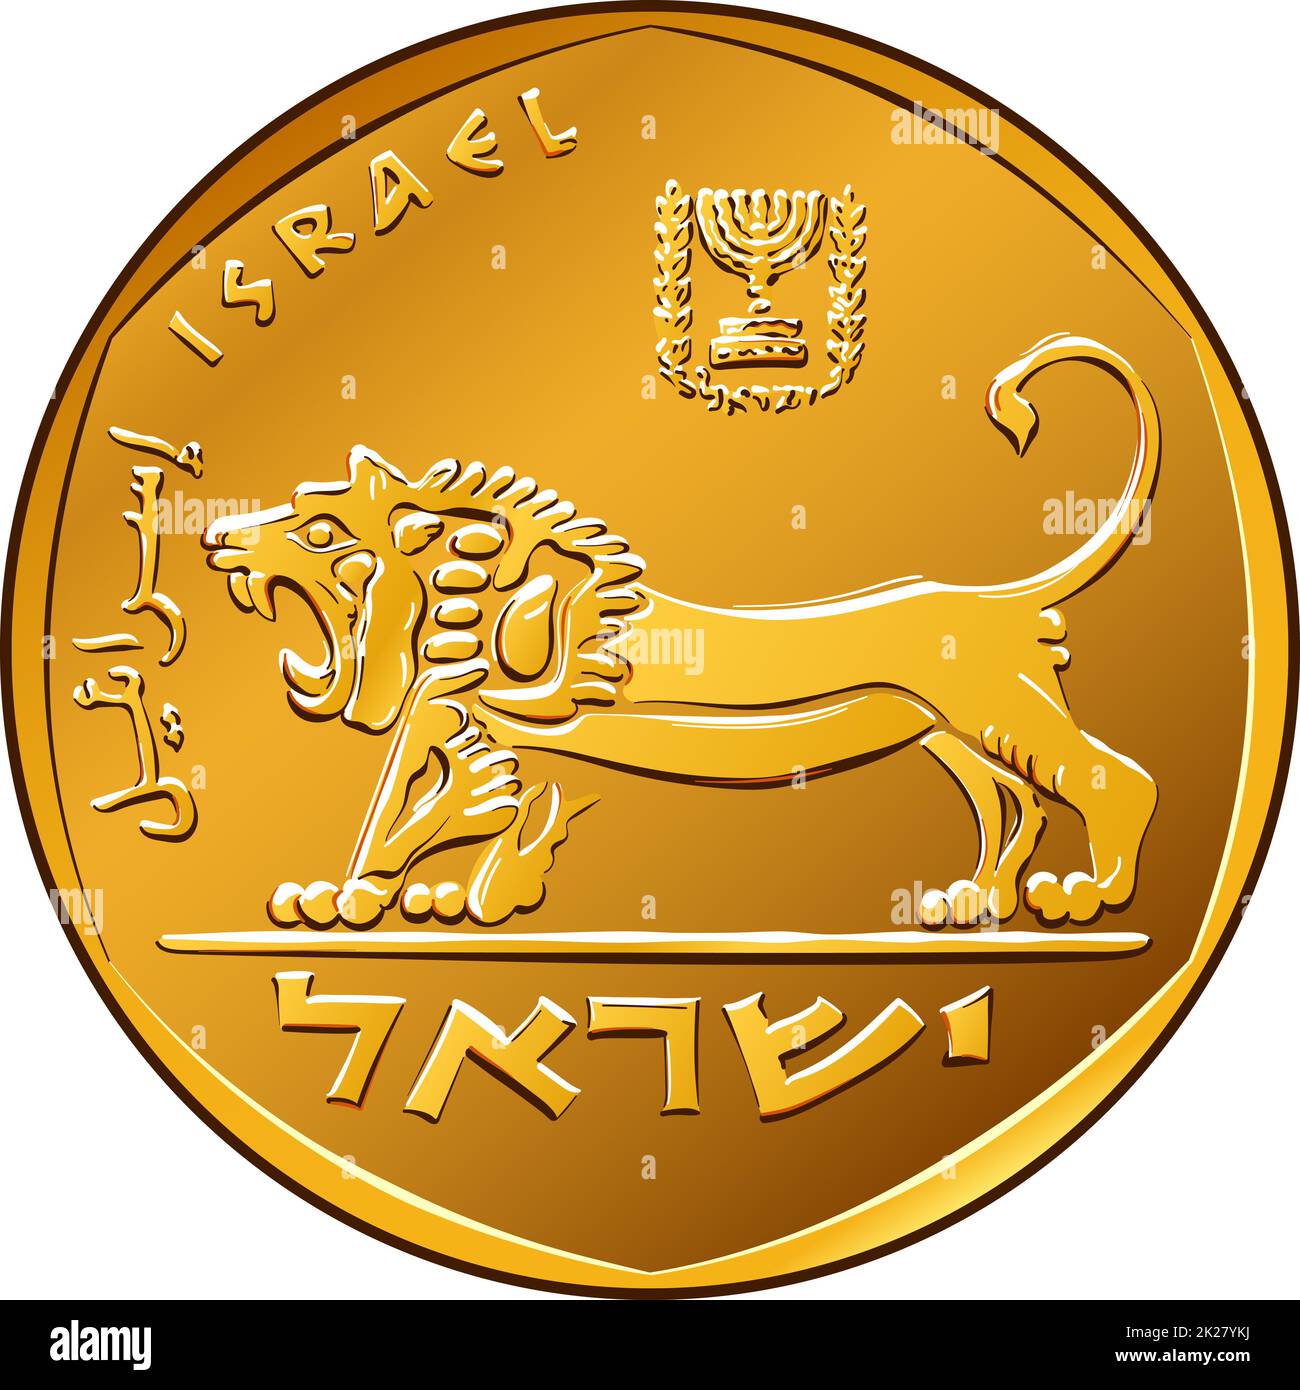 5 Israelischer Schekel-Münze Auf Weißem Hintergrund Lizenzfreie Fotos,  Bilder und Stock Fotografie. Image 20550426.